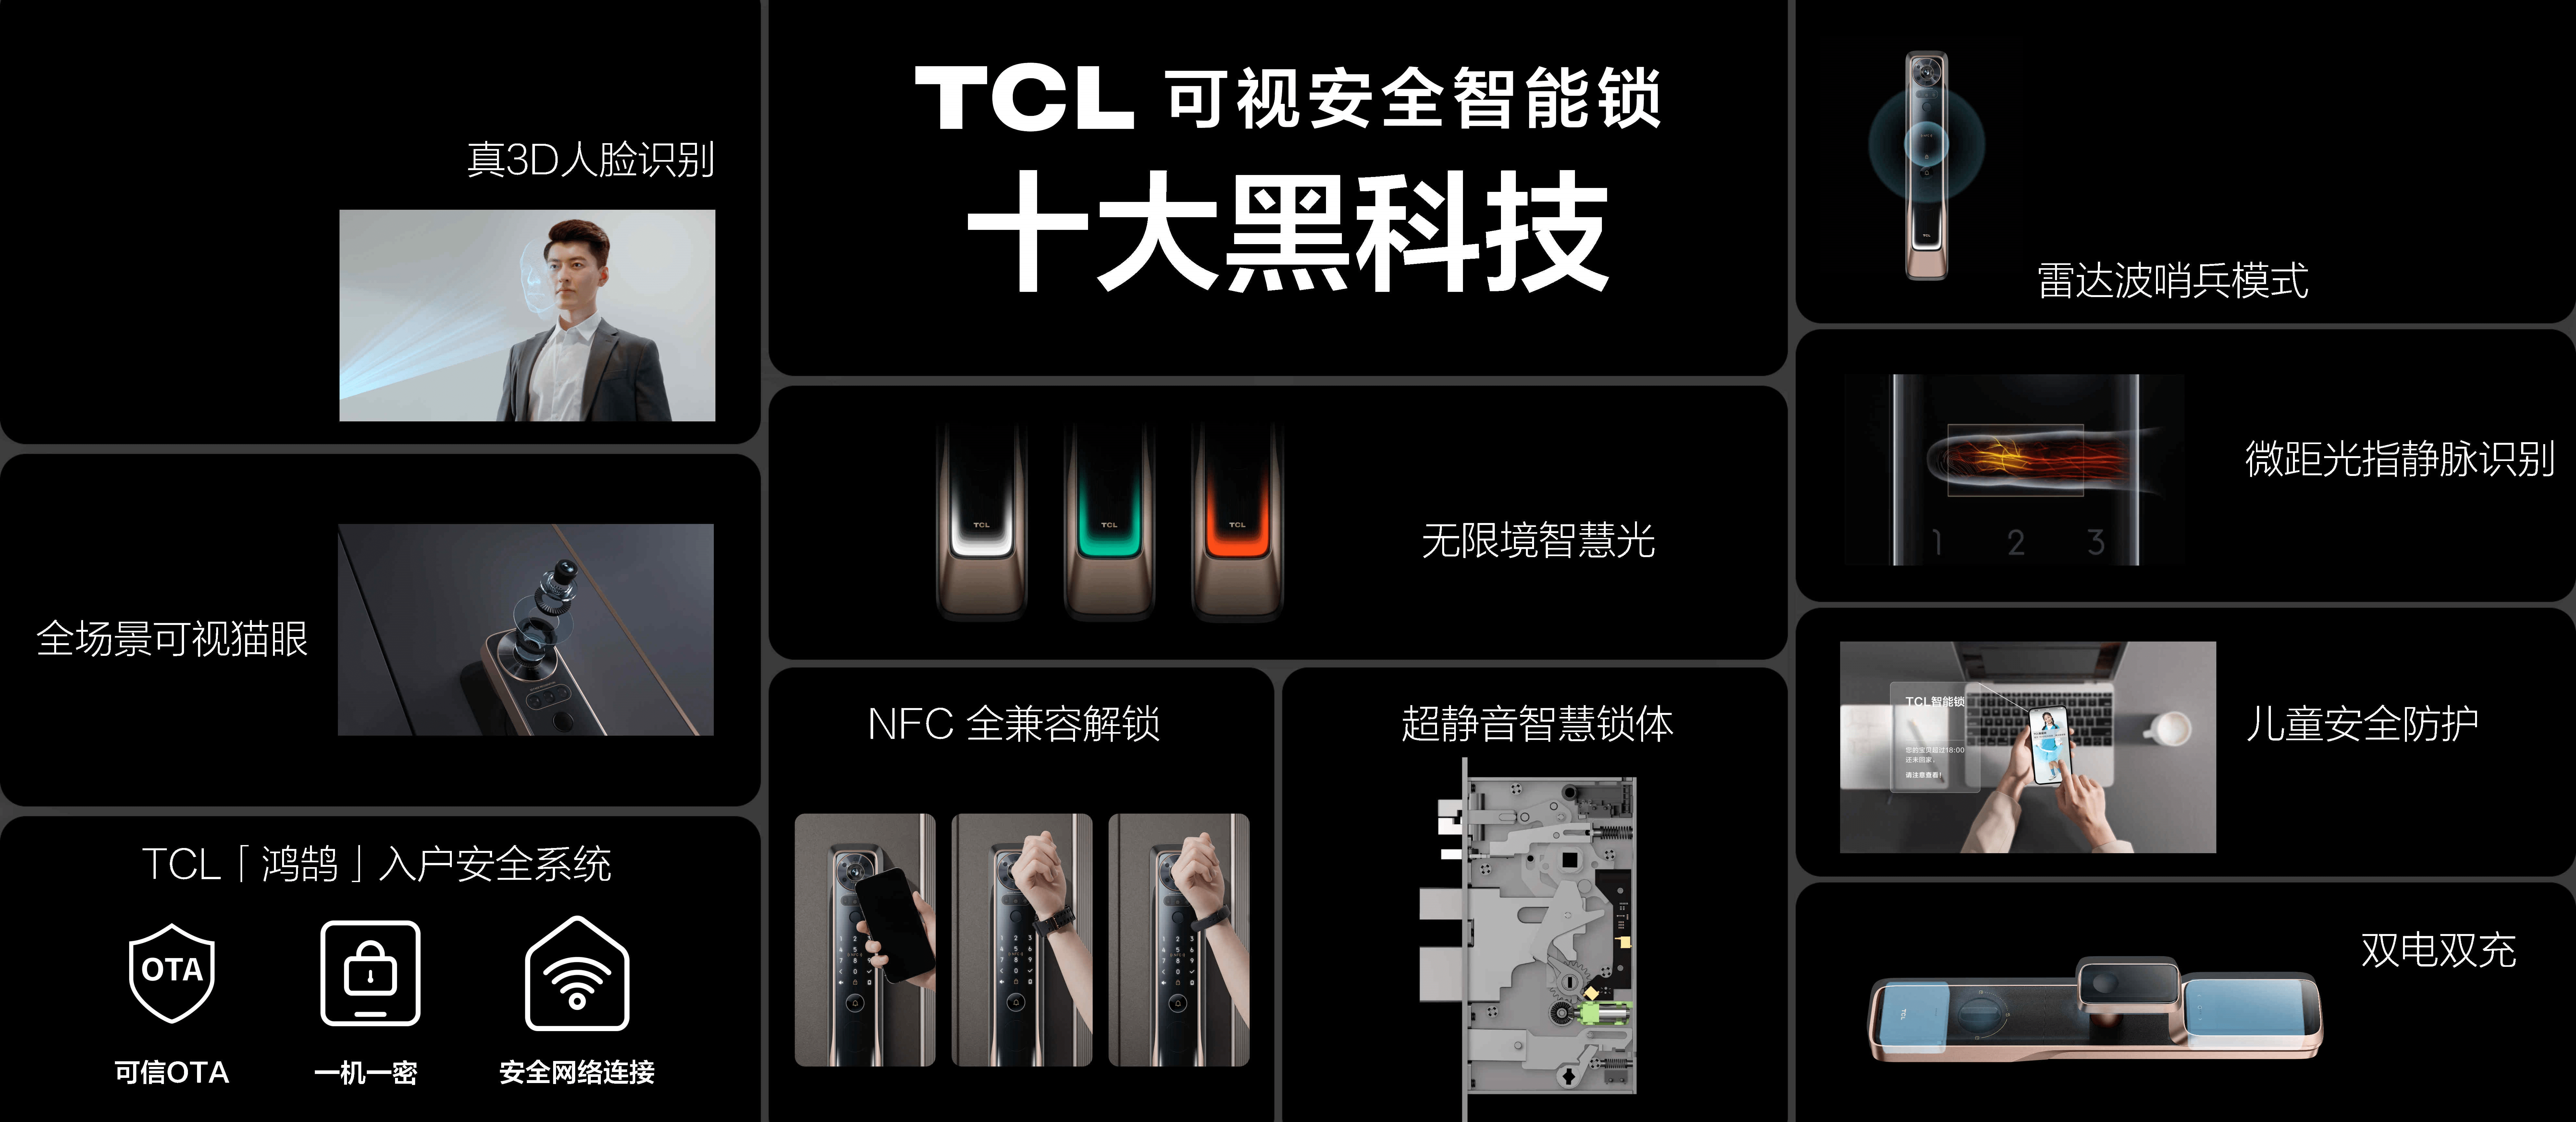 新太阳城TCL智能锁春季新品发布十大黑科技让用户“看得见的安全感”(图2)